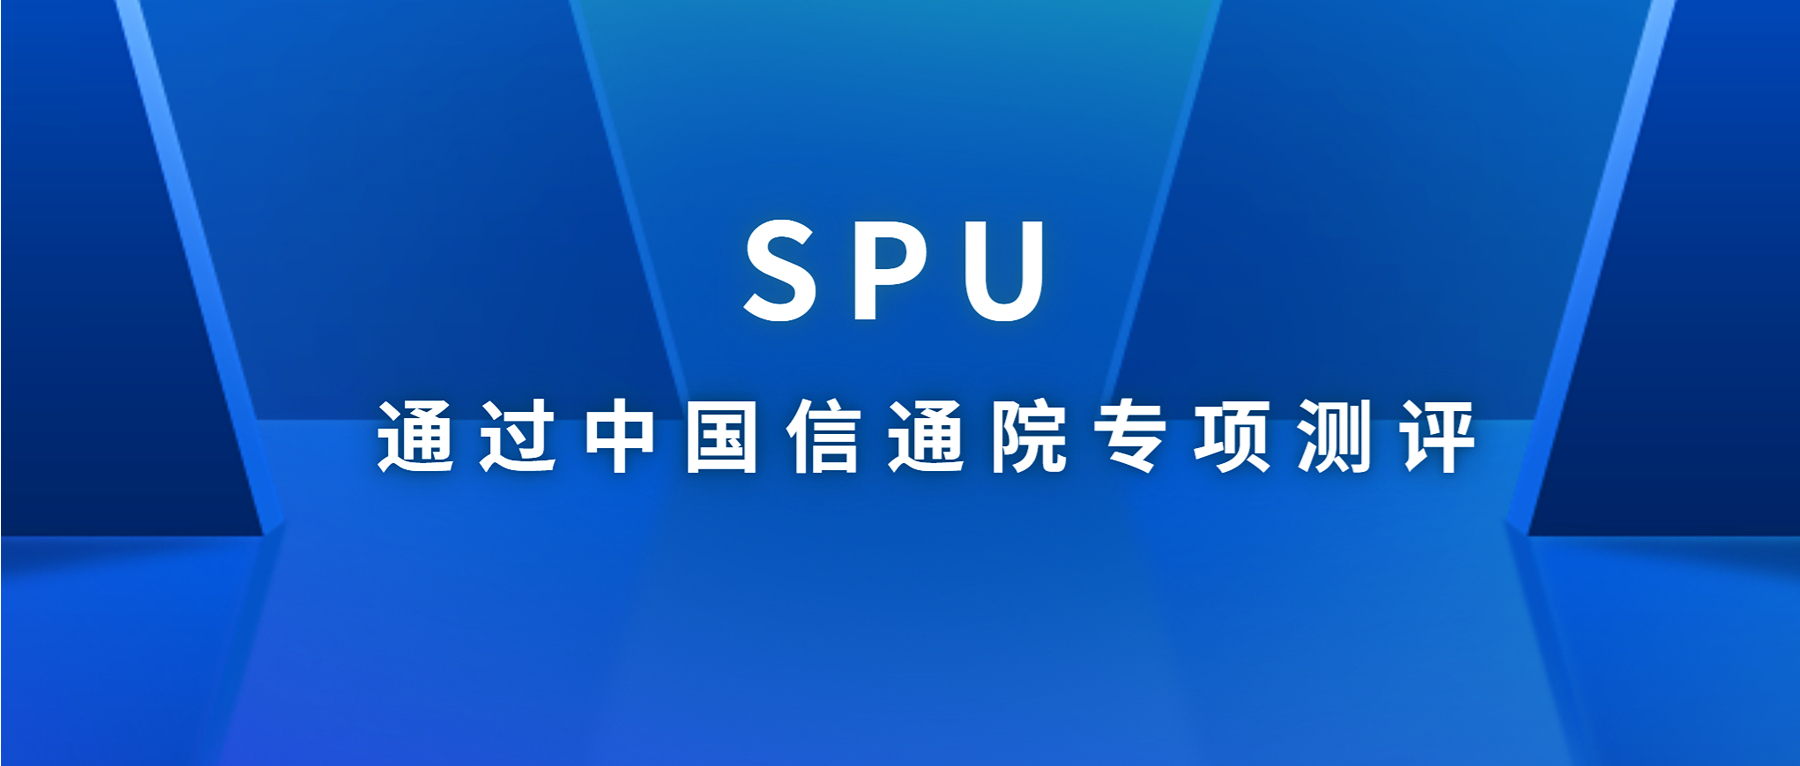 SPU可信计算环境管理平台通过中国信通院“可信执行环境 基础能力专项测评”